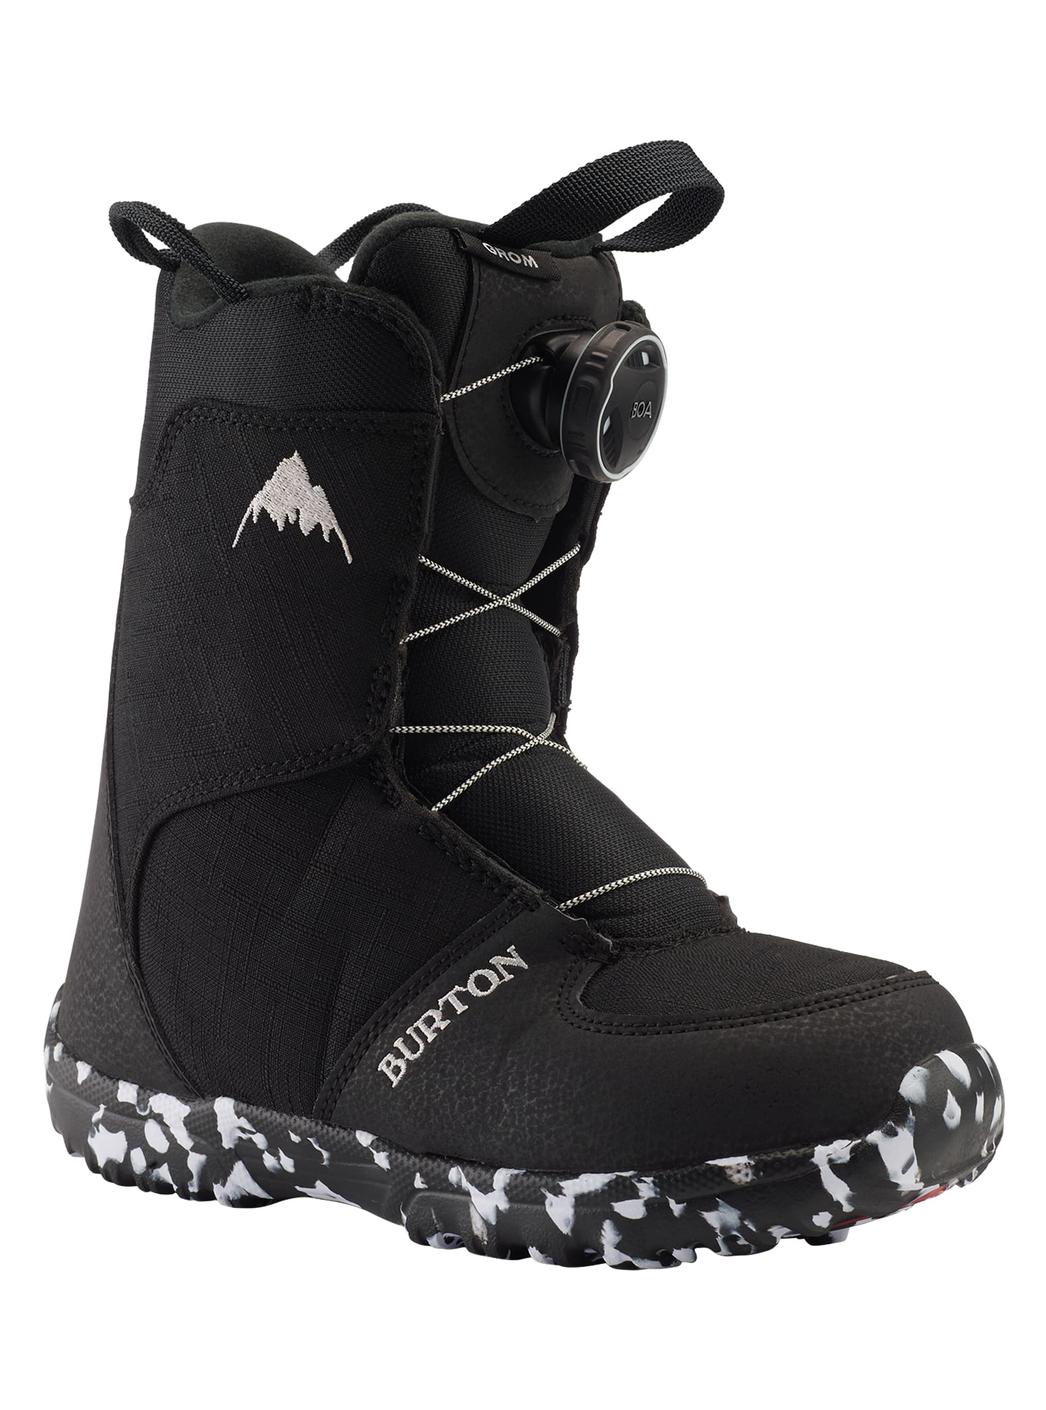 Burton - Boots de snowboard Grom BOA® enfant offre à 119€ sur Burton of London